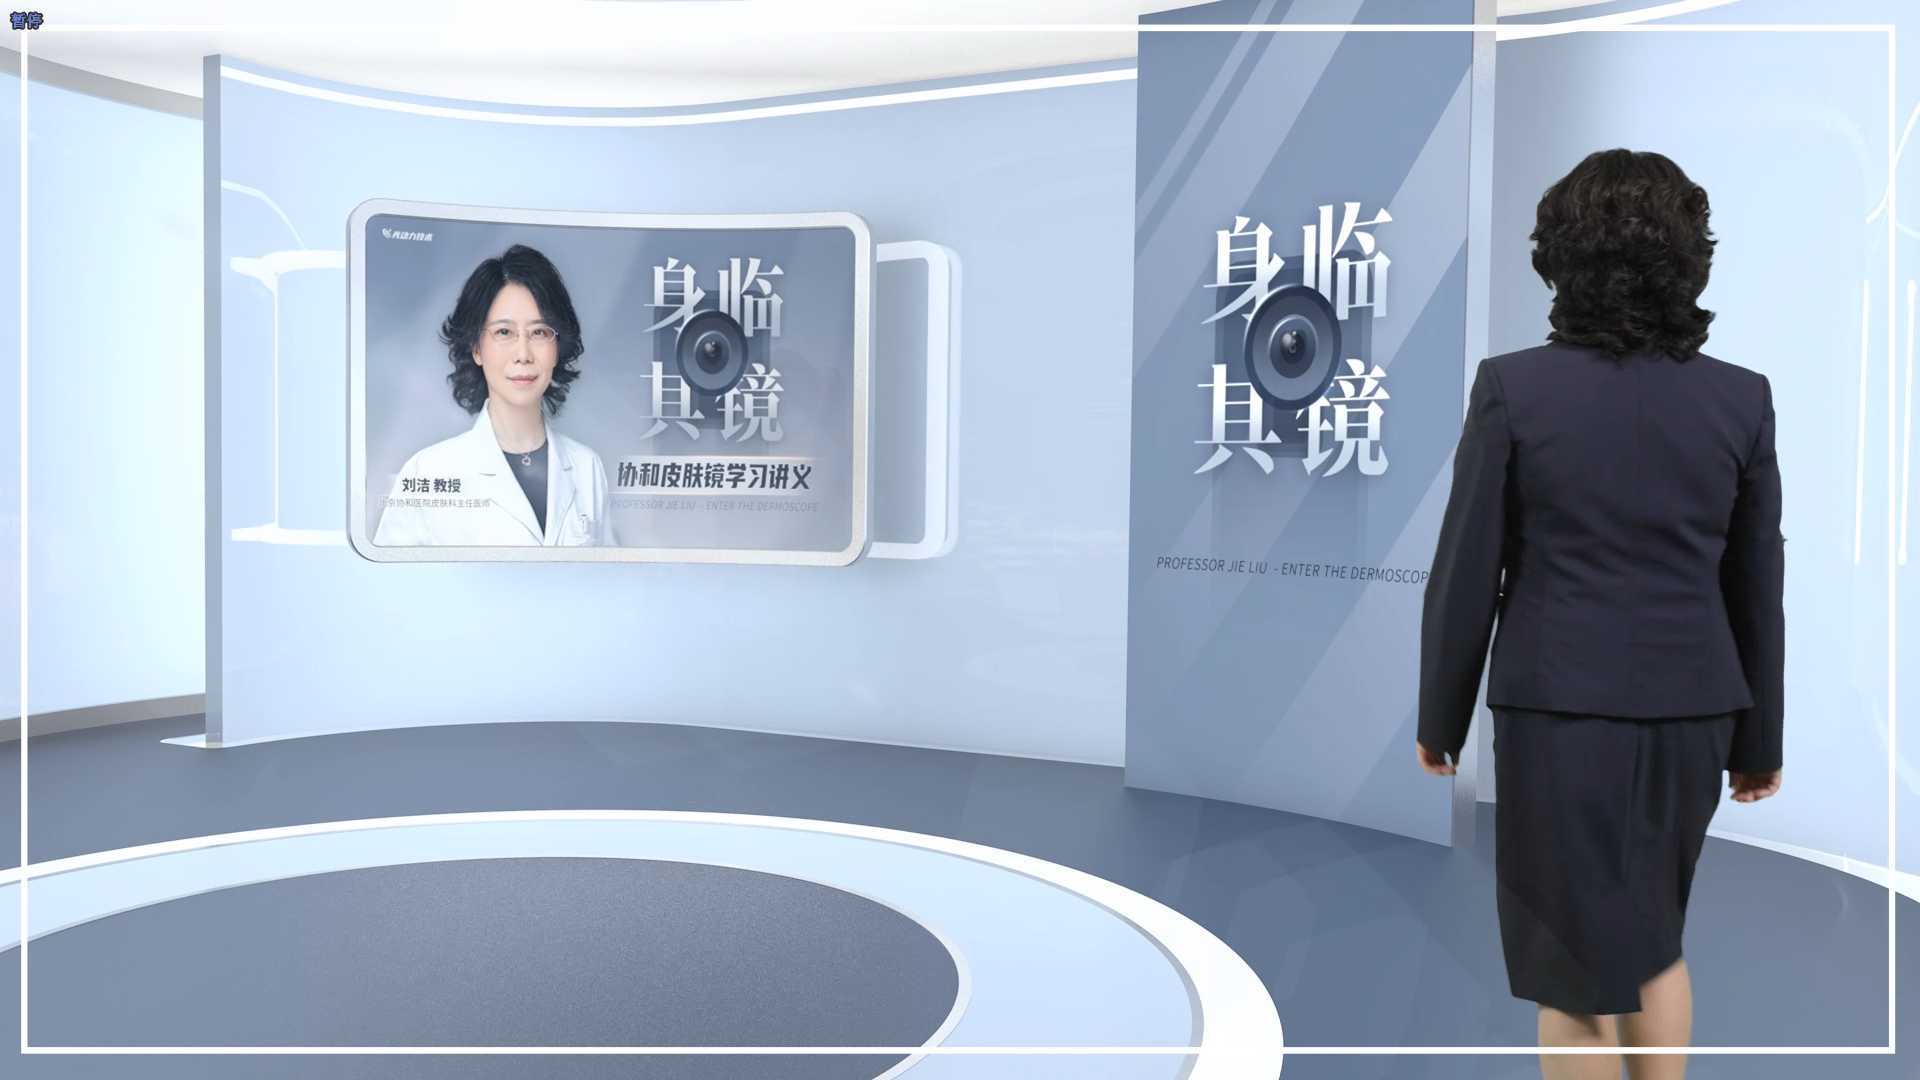 【身临其镜】-医学栏目3D虚拟演播厅